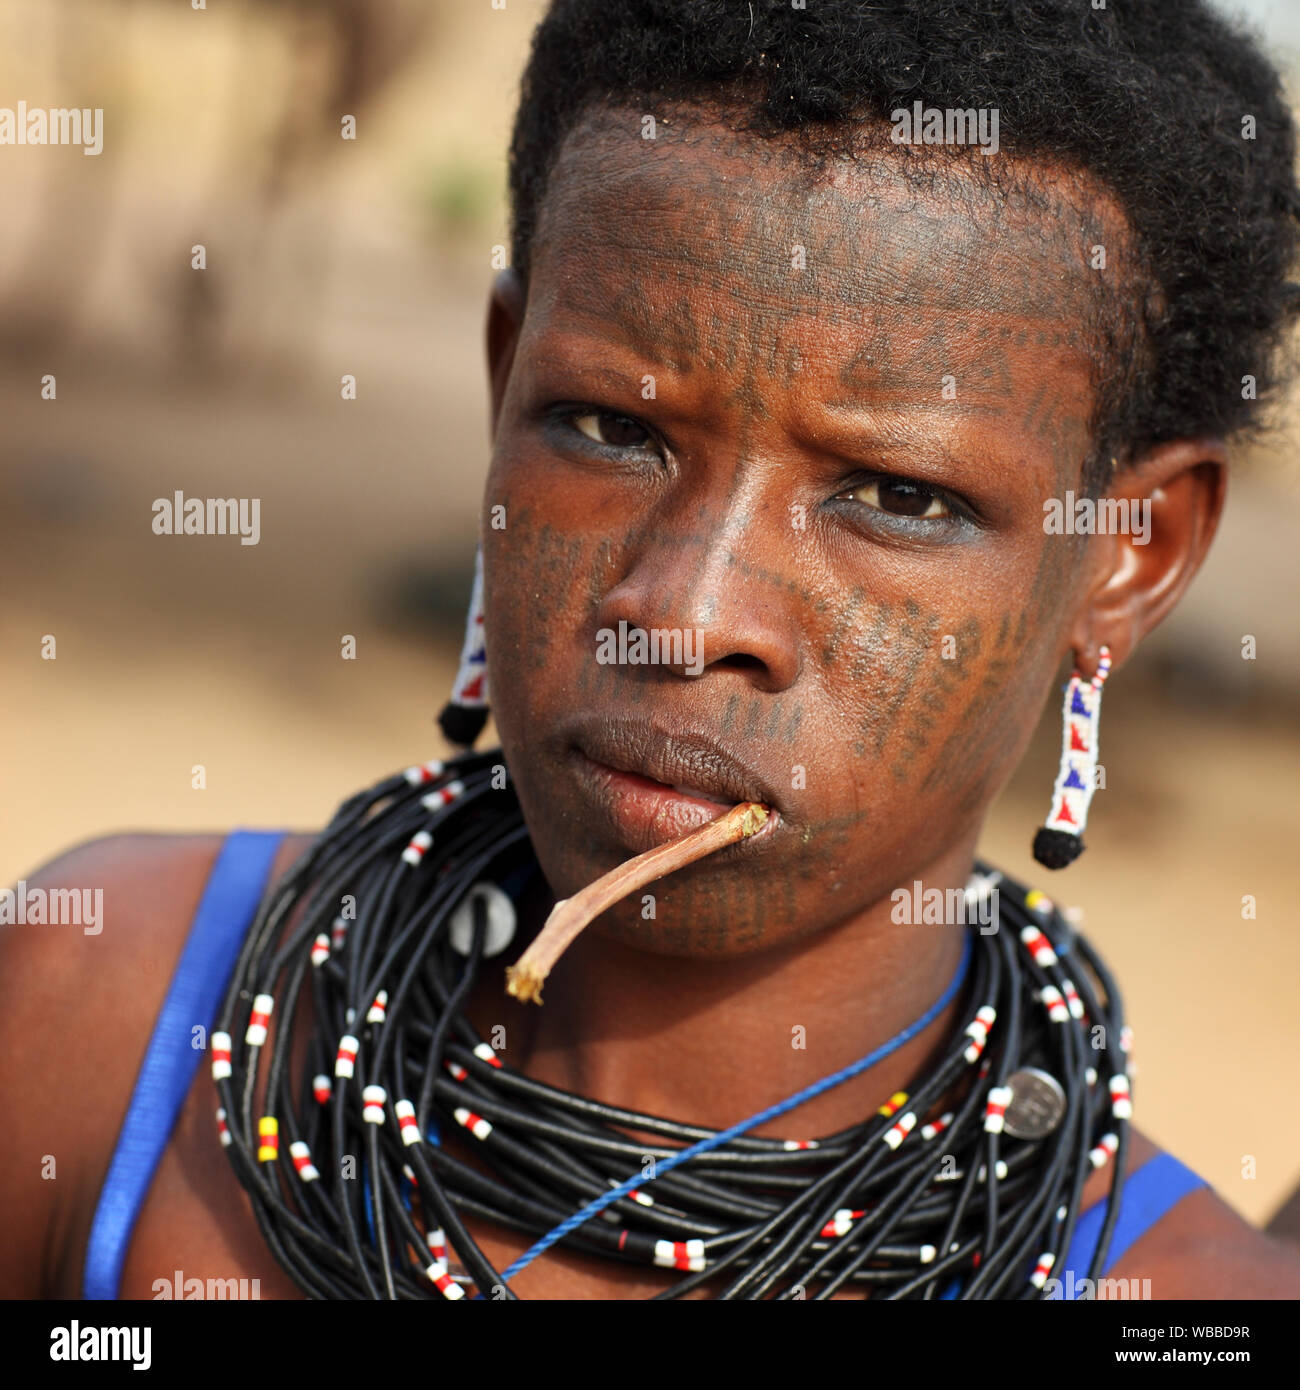 Belle femme Fulani avec tatouage de visage près de Cove, Bénin Banque D'Images